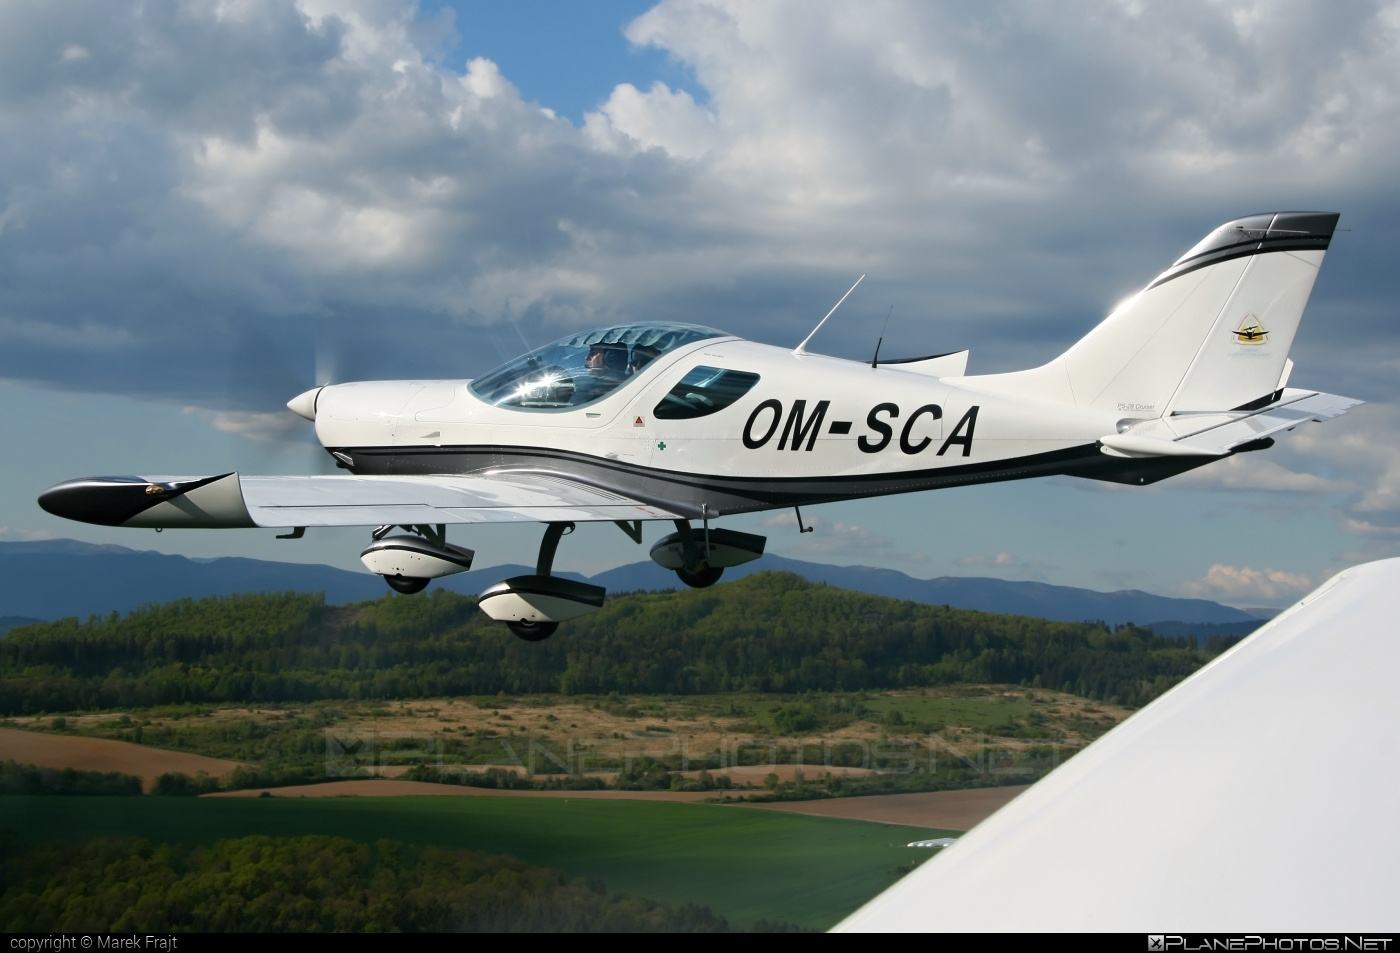 Czech Sport Aircraft PS-28 Cruiser - OM-SCA operated by SKY SERVICE s.r.o. #czechsportaircraft #ps28 #ps28cruiser